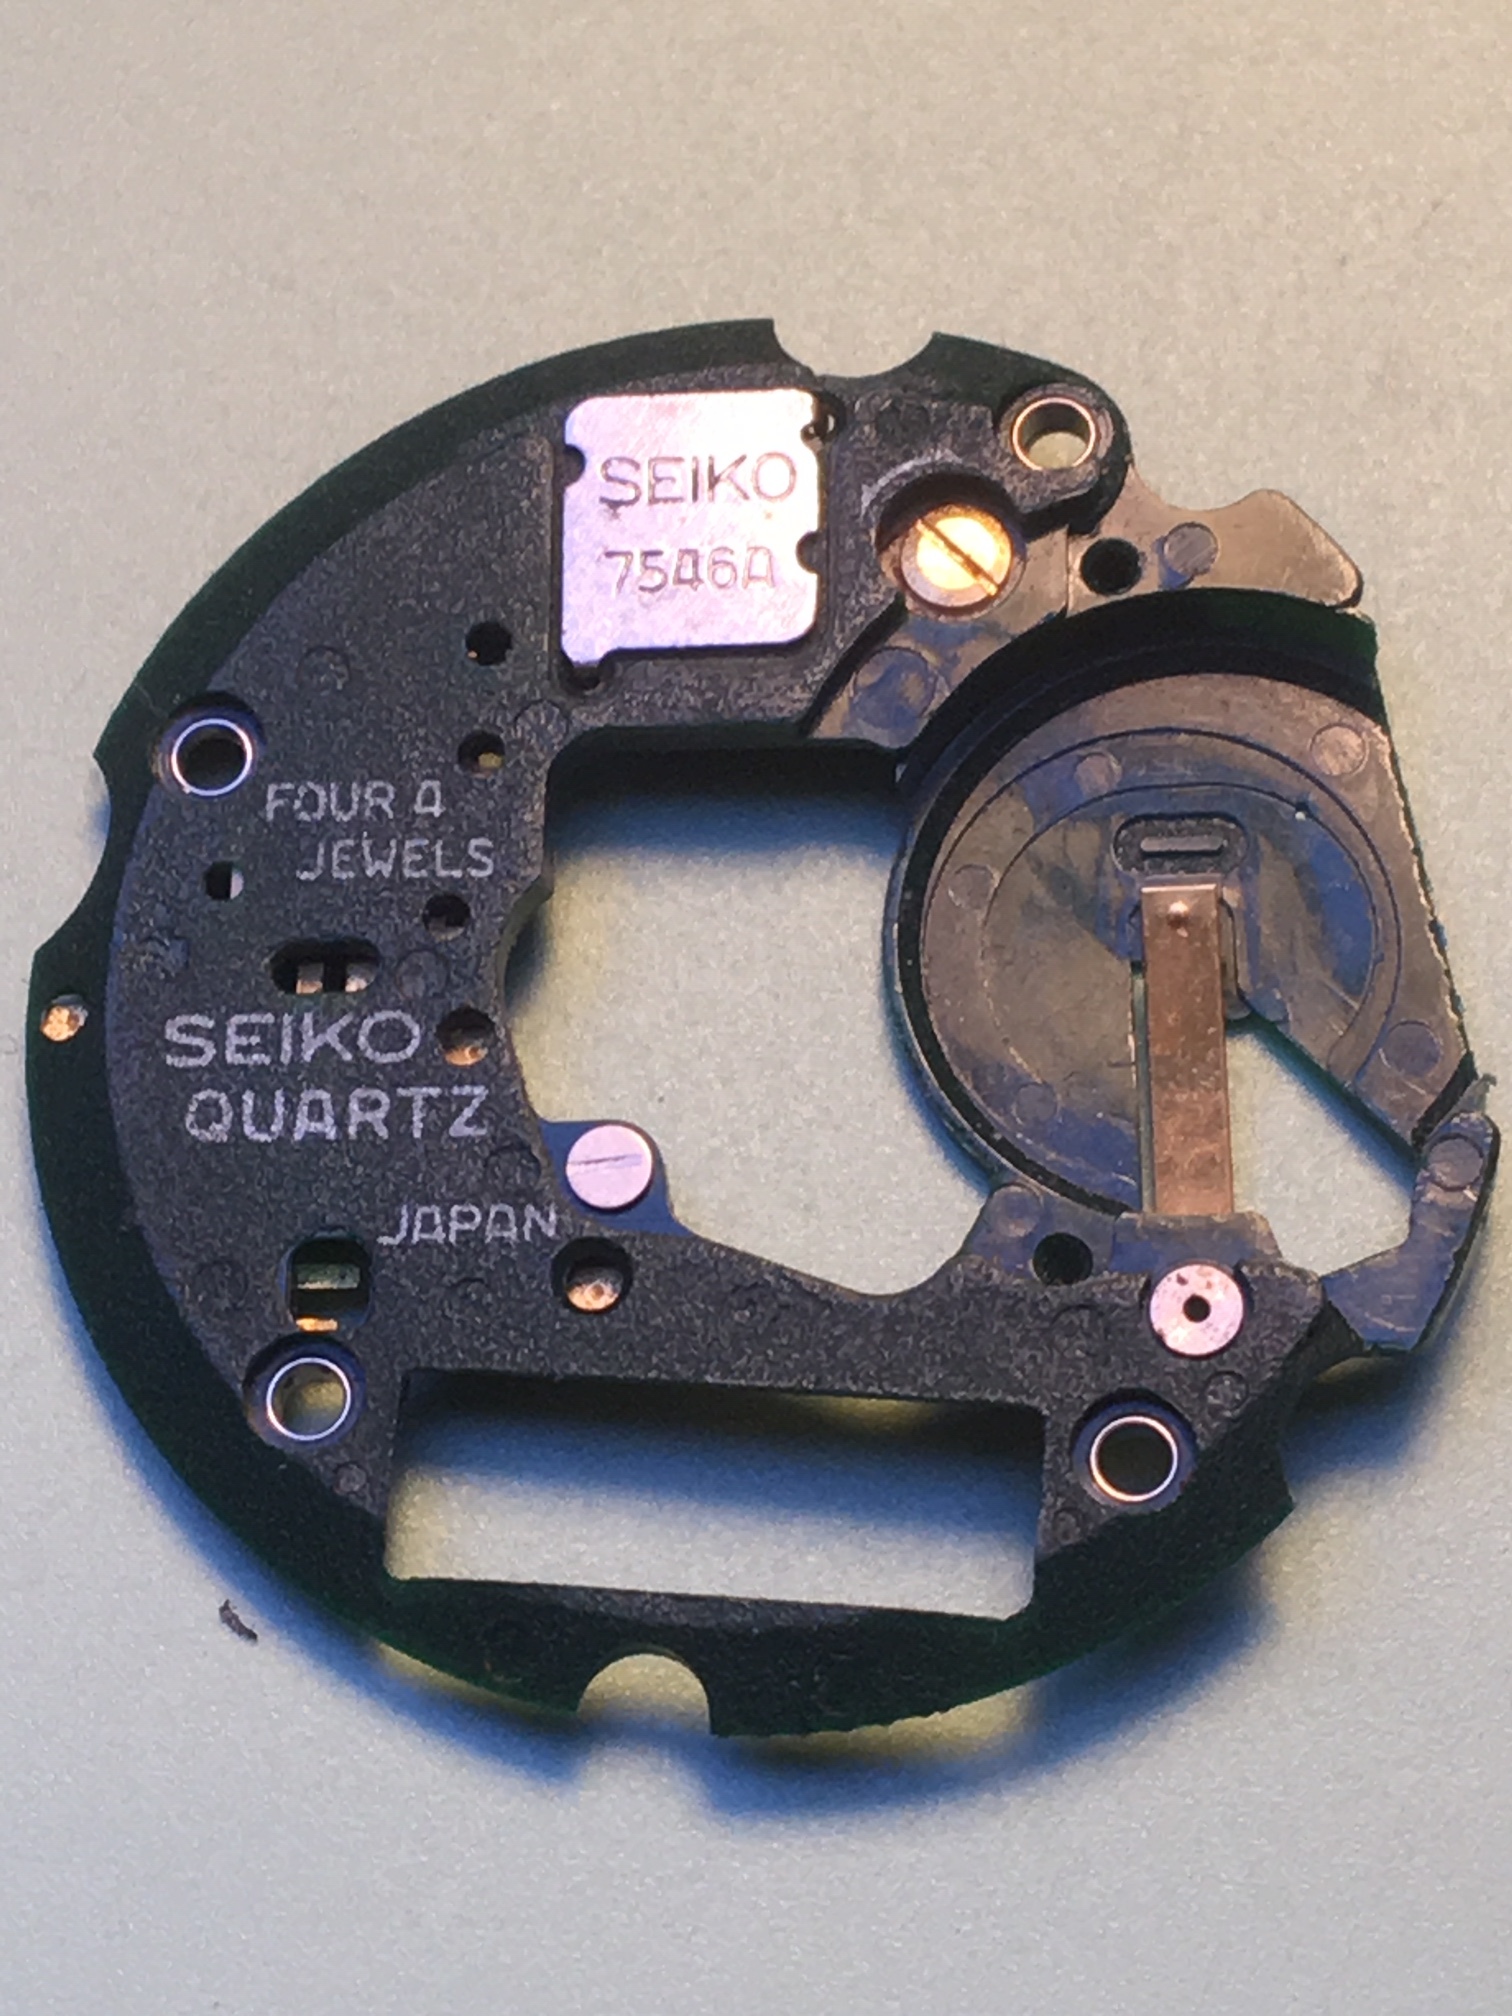 SEIKO 8170 met 7546a movement - Vintage Horlogeforum  -  het forum voor liefhebbers van horloges